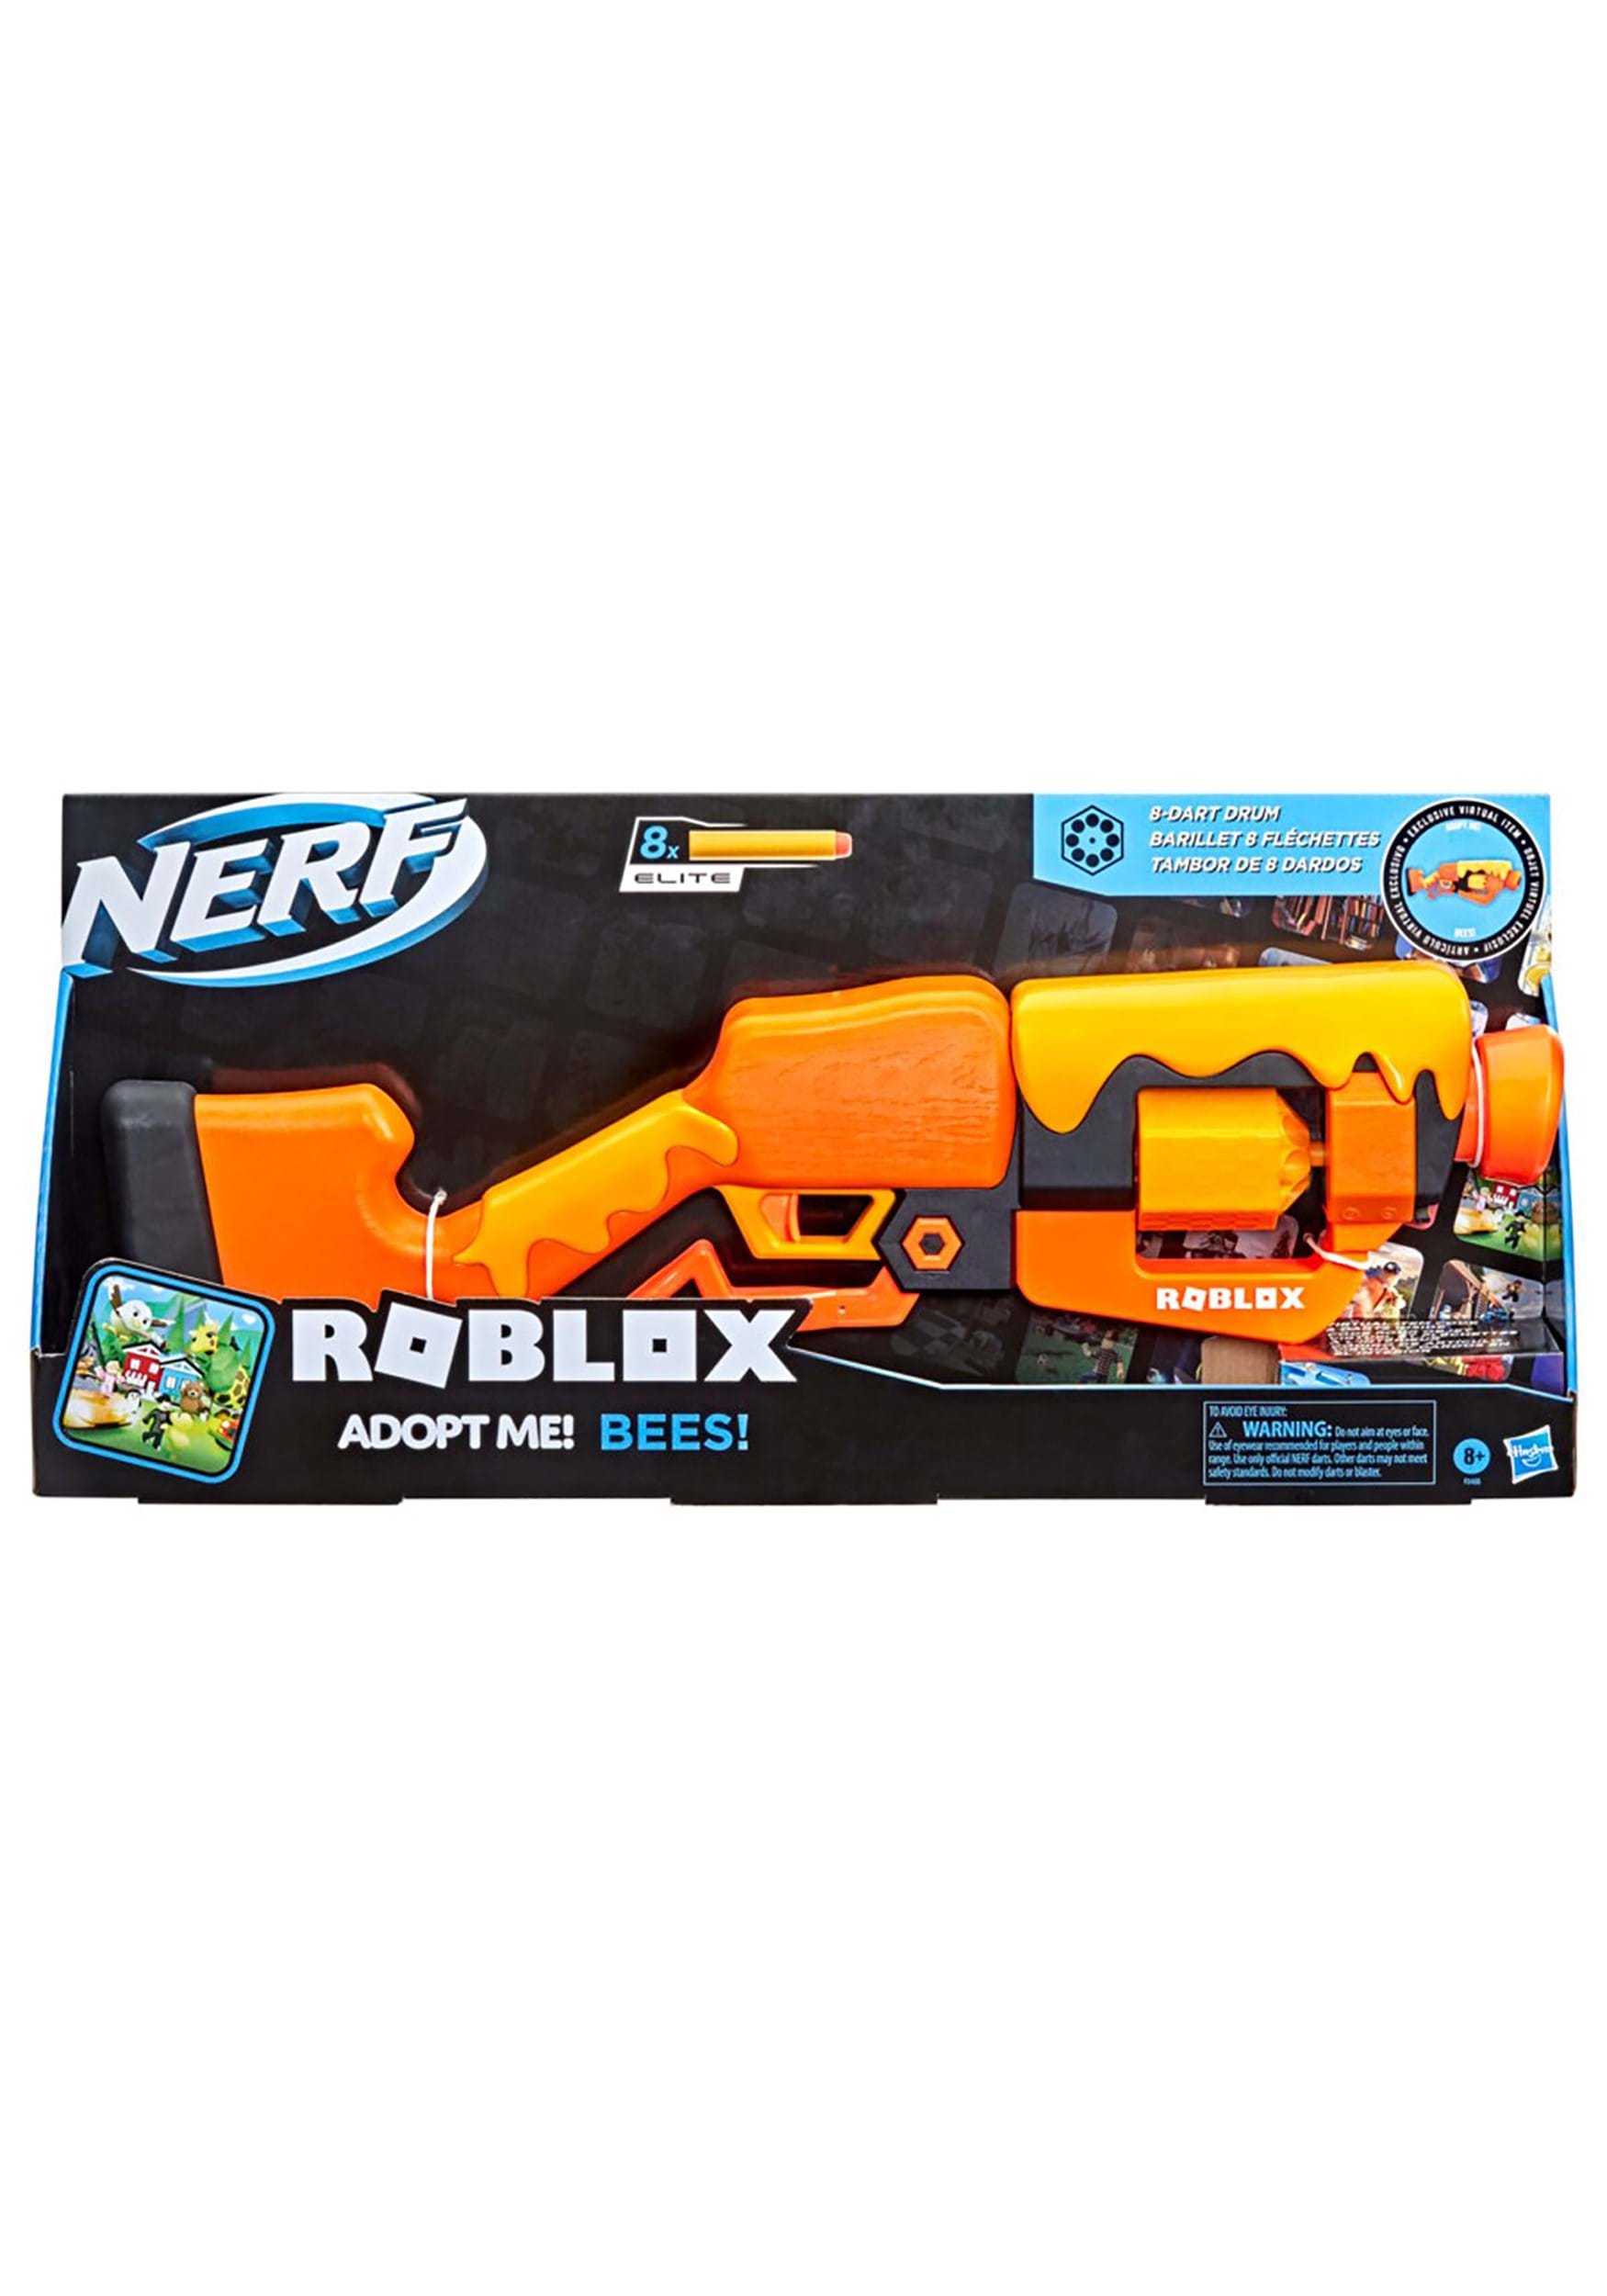 NERF Roblox Adopt Me!: BEES! 8 Dart Drum Blaster Gun with Virtual